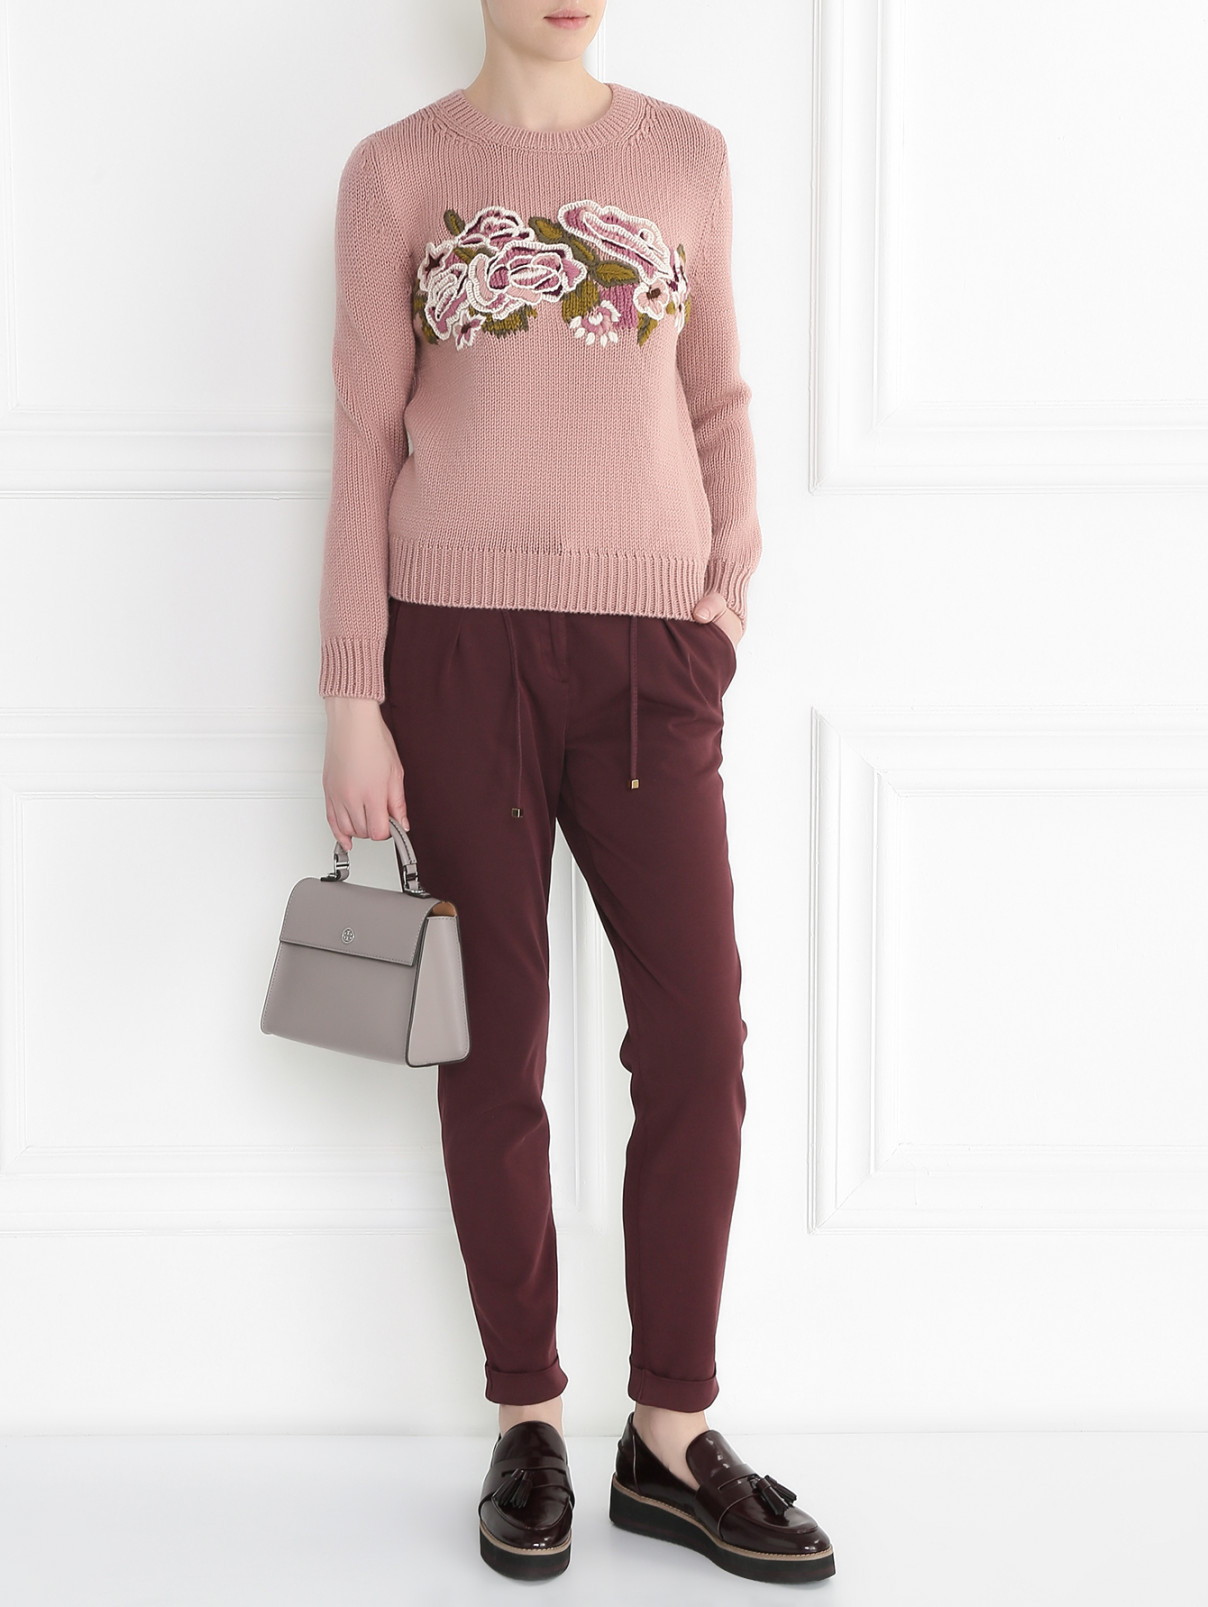 Свитер из шерсти с вышивкой Alberta Ferretti  –  Модель Общий вид  – Цвет:  Розовый